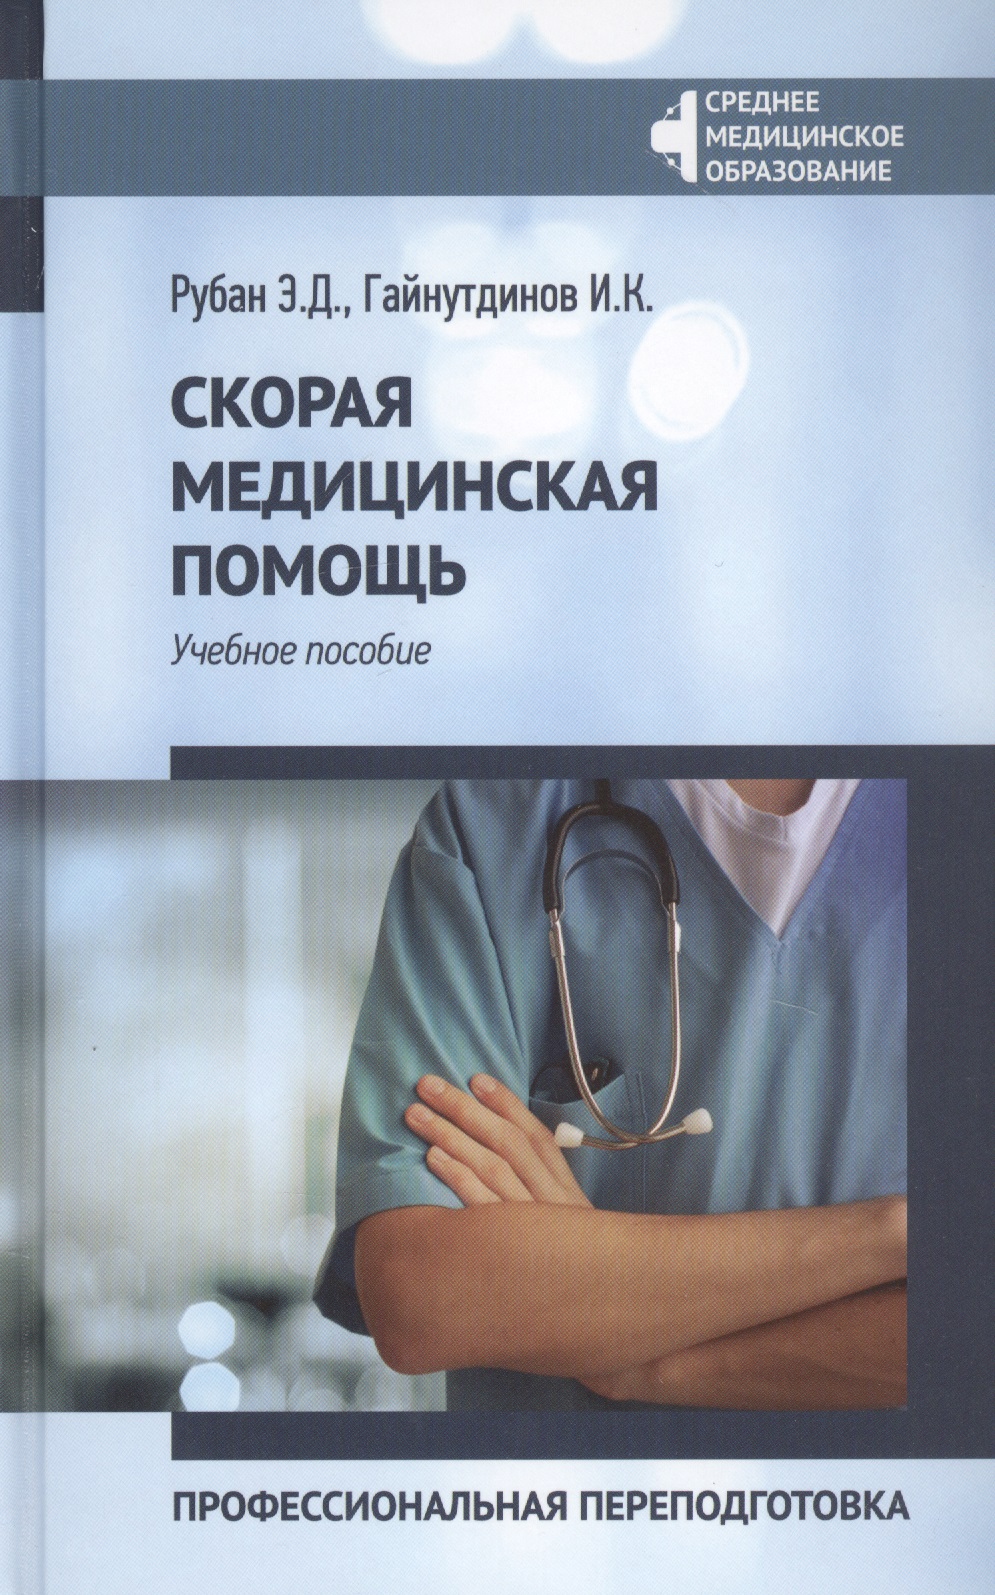 Скорая медицинская помощь: Профессиональная переподготовка скорая медицинская помощь краткое руководство